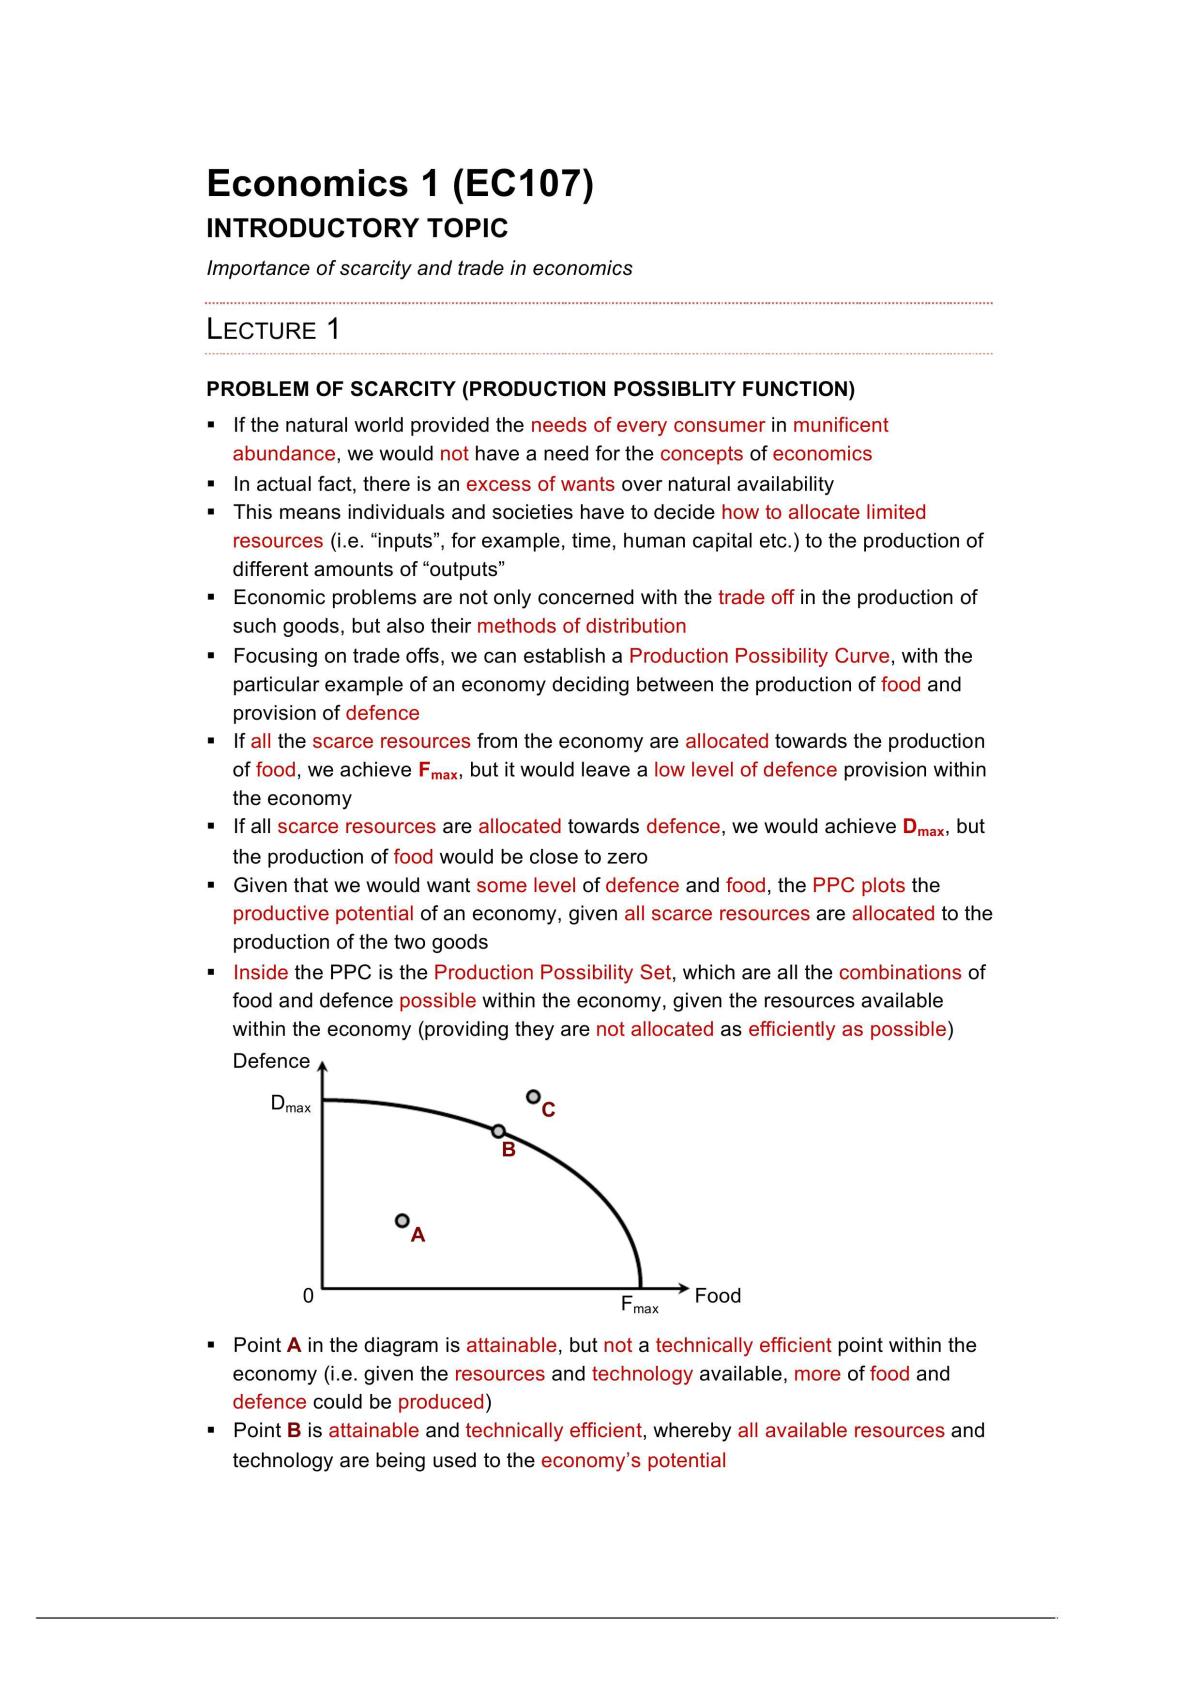 Economics 1 Lecture Notes - Page 1